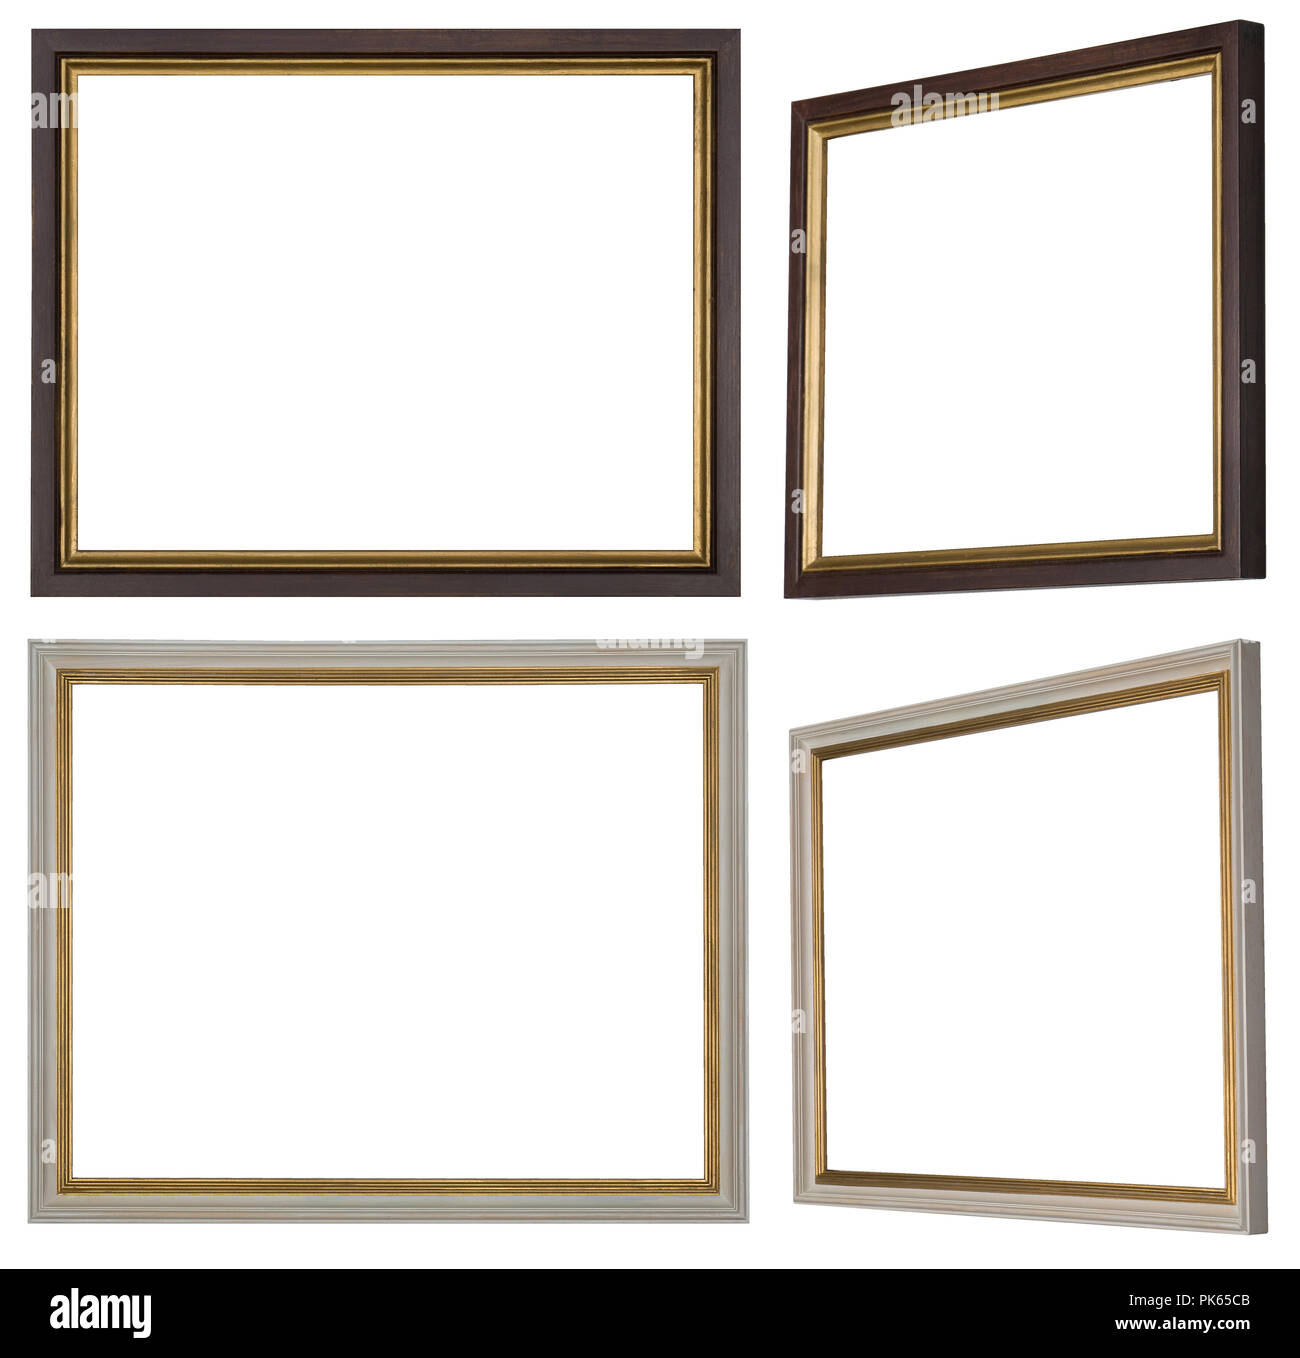 Zwei schmale Rahmen in Weiß und Braun mit Gold dekoriert in zwei Perspektiven jedes Stockfoto